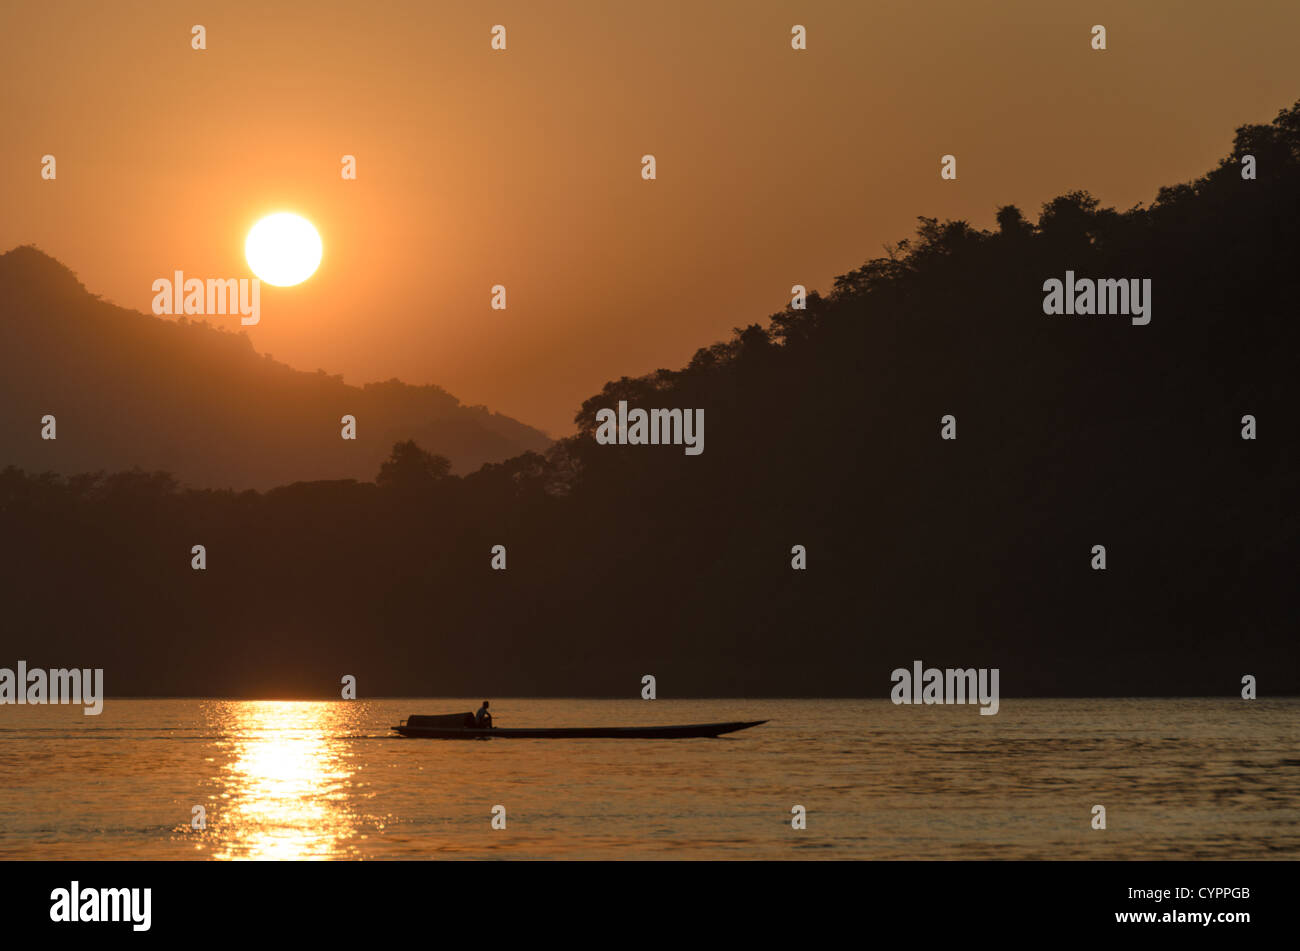 LUANG PRABANG, Laos - un sampan motorisés traverse la rivière juste avant que le soleil se couche derrière les moutnains sur le Mékong près de Luang Prabang, Laos. Banque D'Images